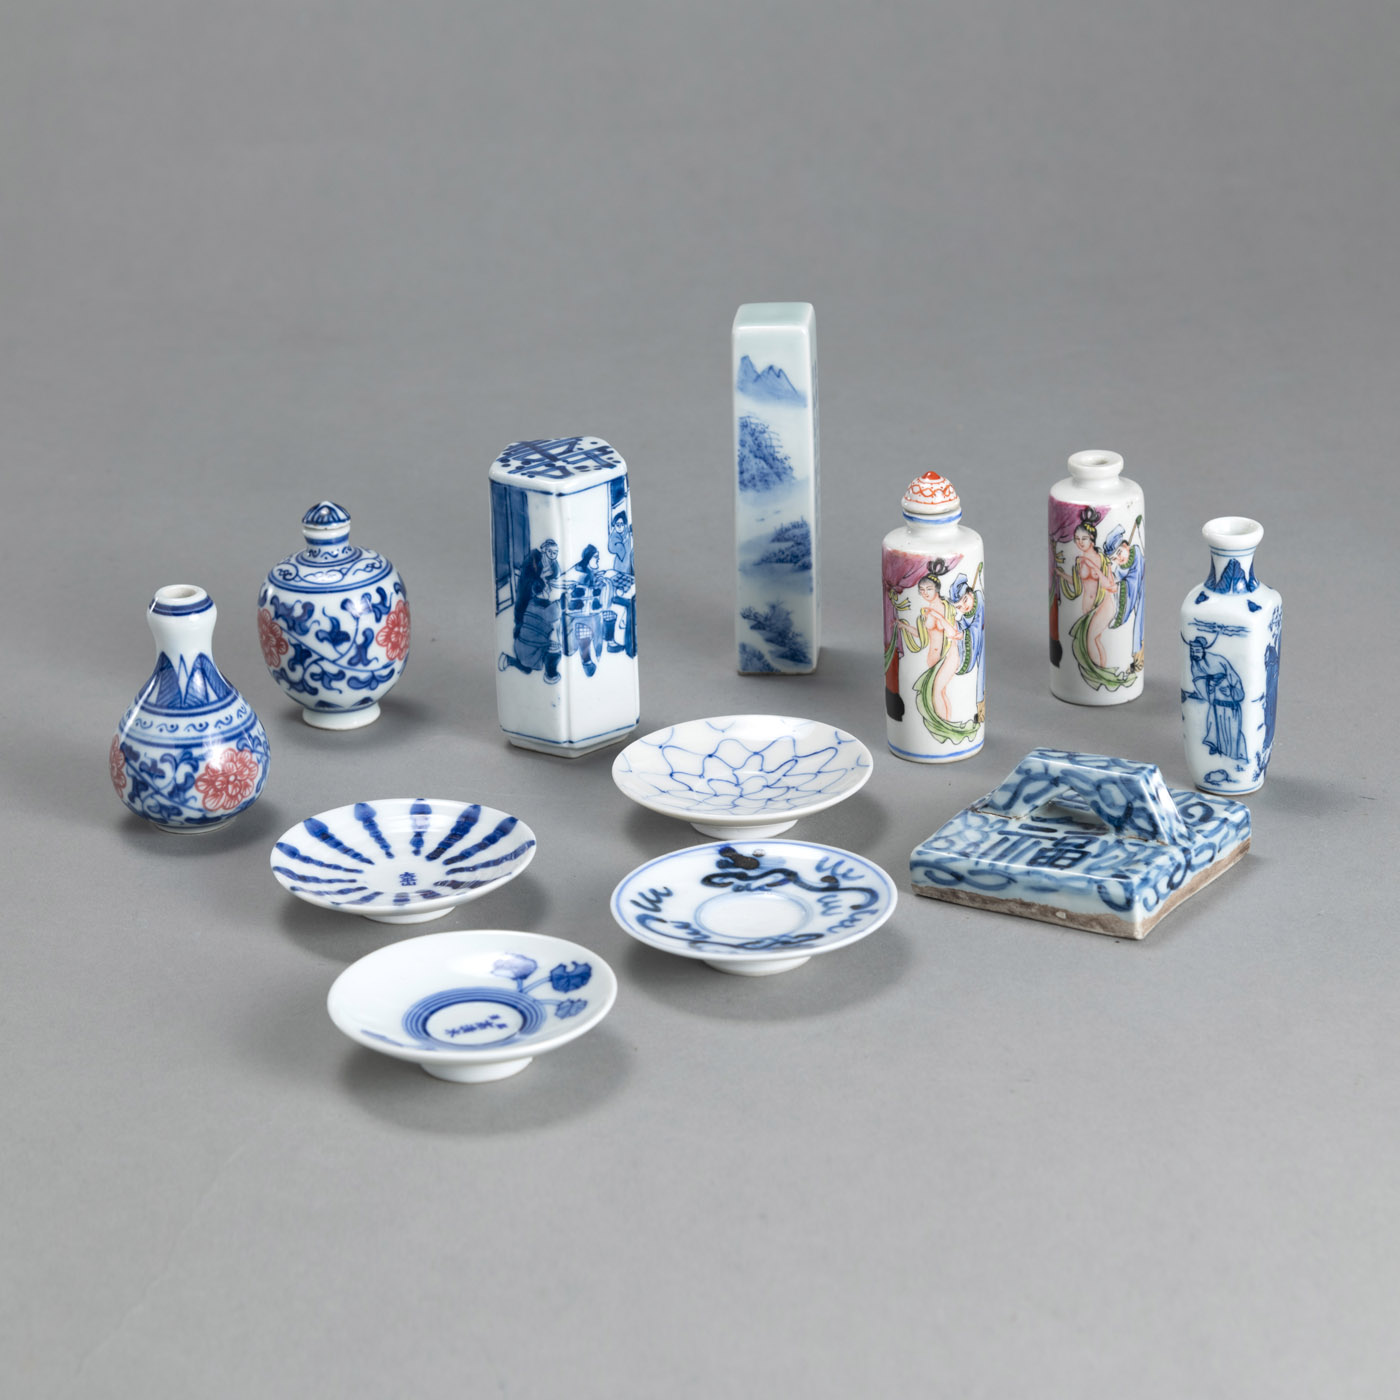 <b>Gruppe von blau-weiß und 'Famille rose'-dekorierten Miniaturvasen, -Schalen und -Snuffbottles</b>